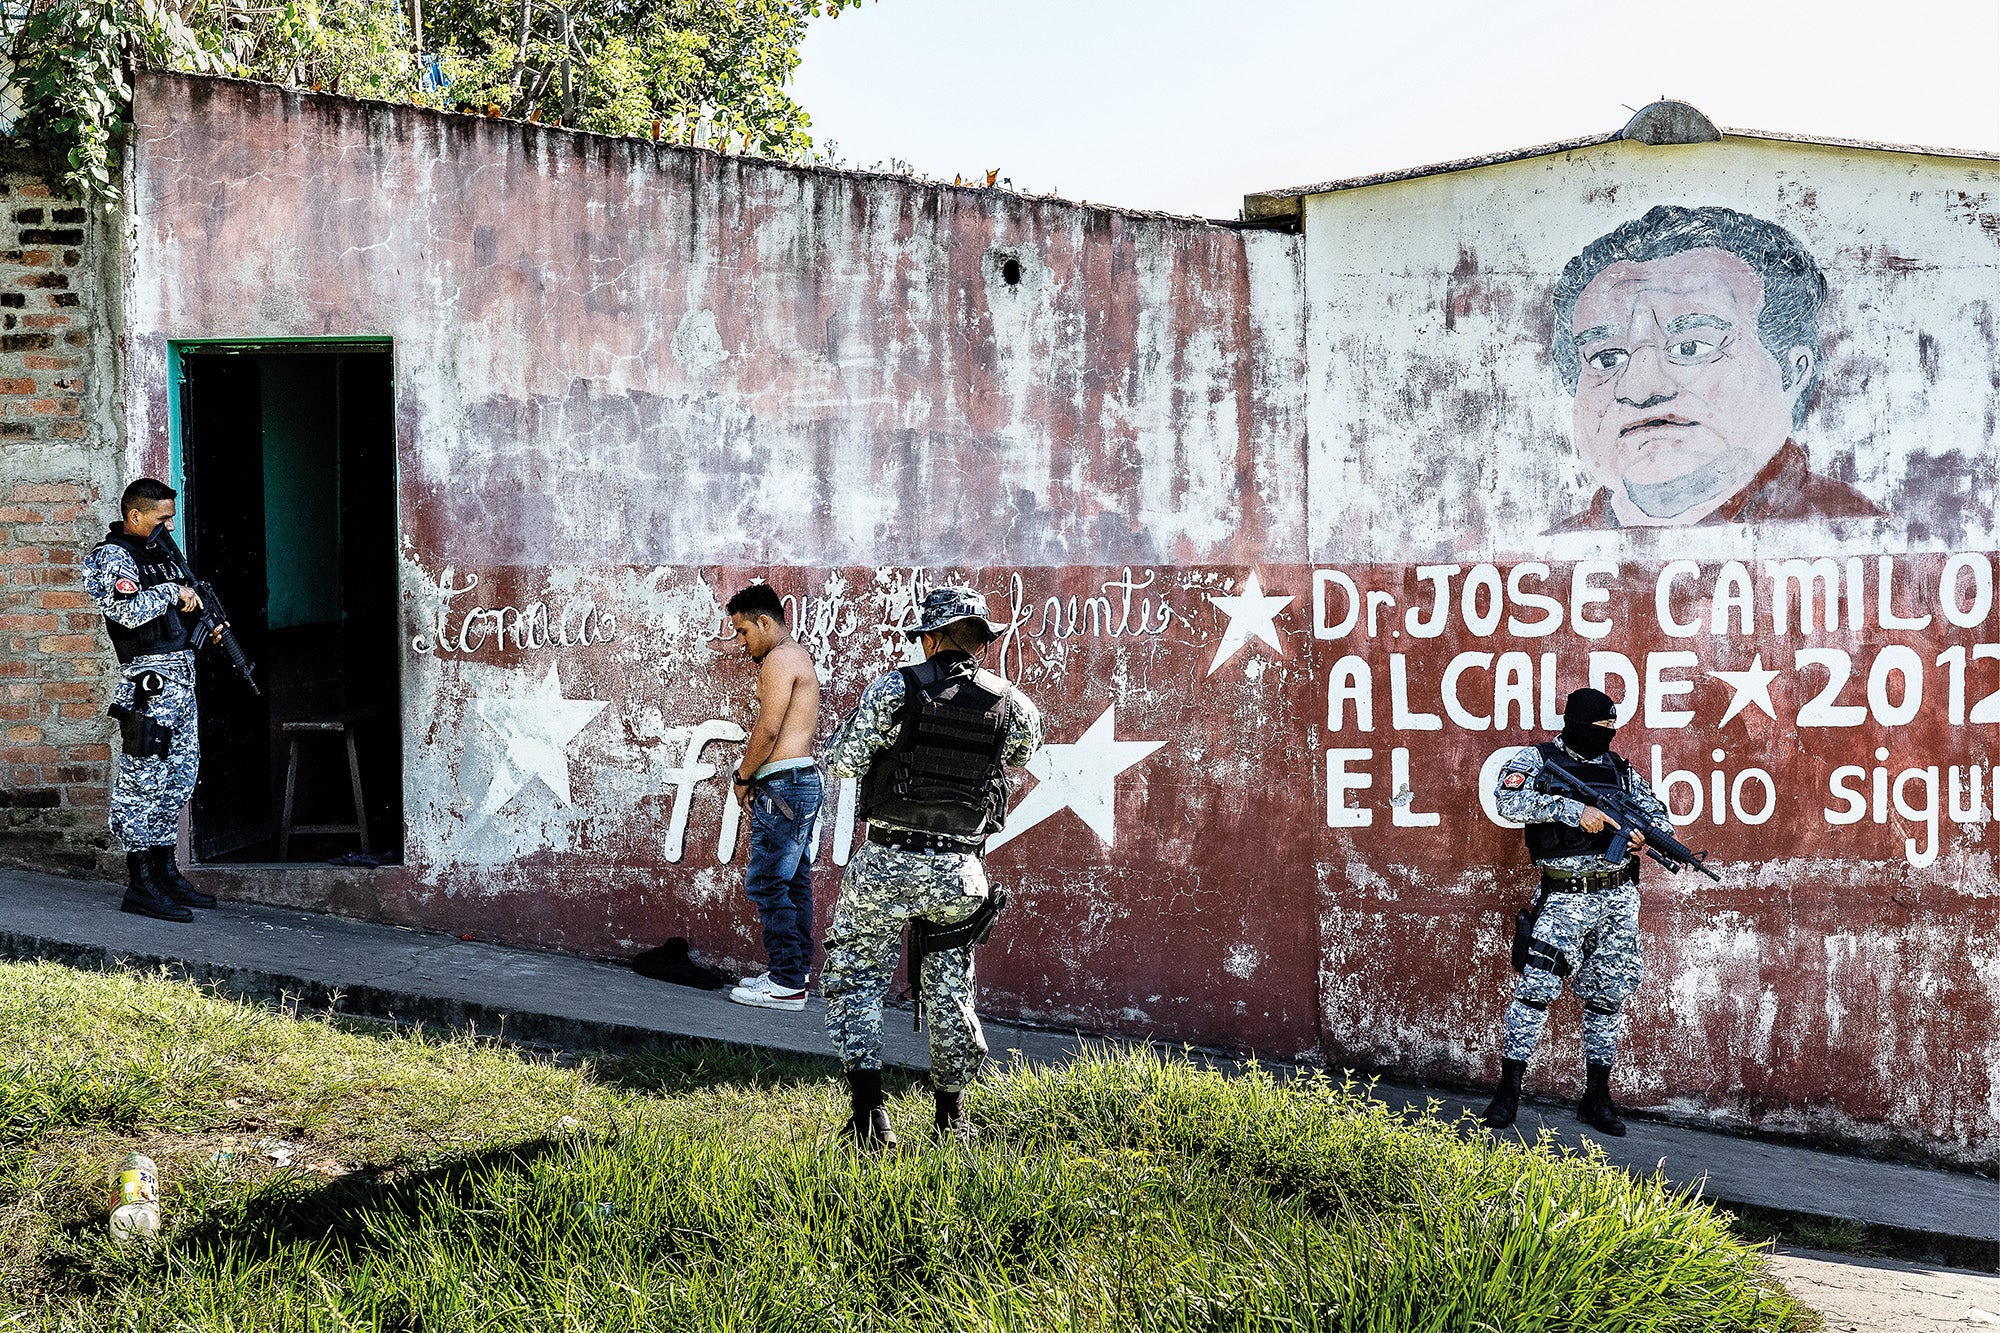 Una patrulla táctica revisa a un transeúnte en busca de armas y tatuajes distintivos en el municipio de Apopa, San Salvador